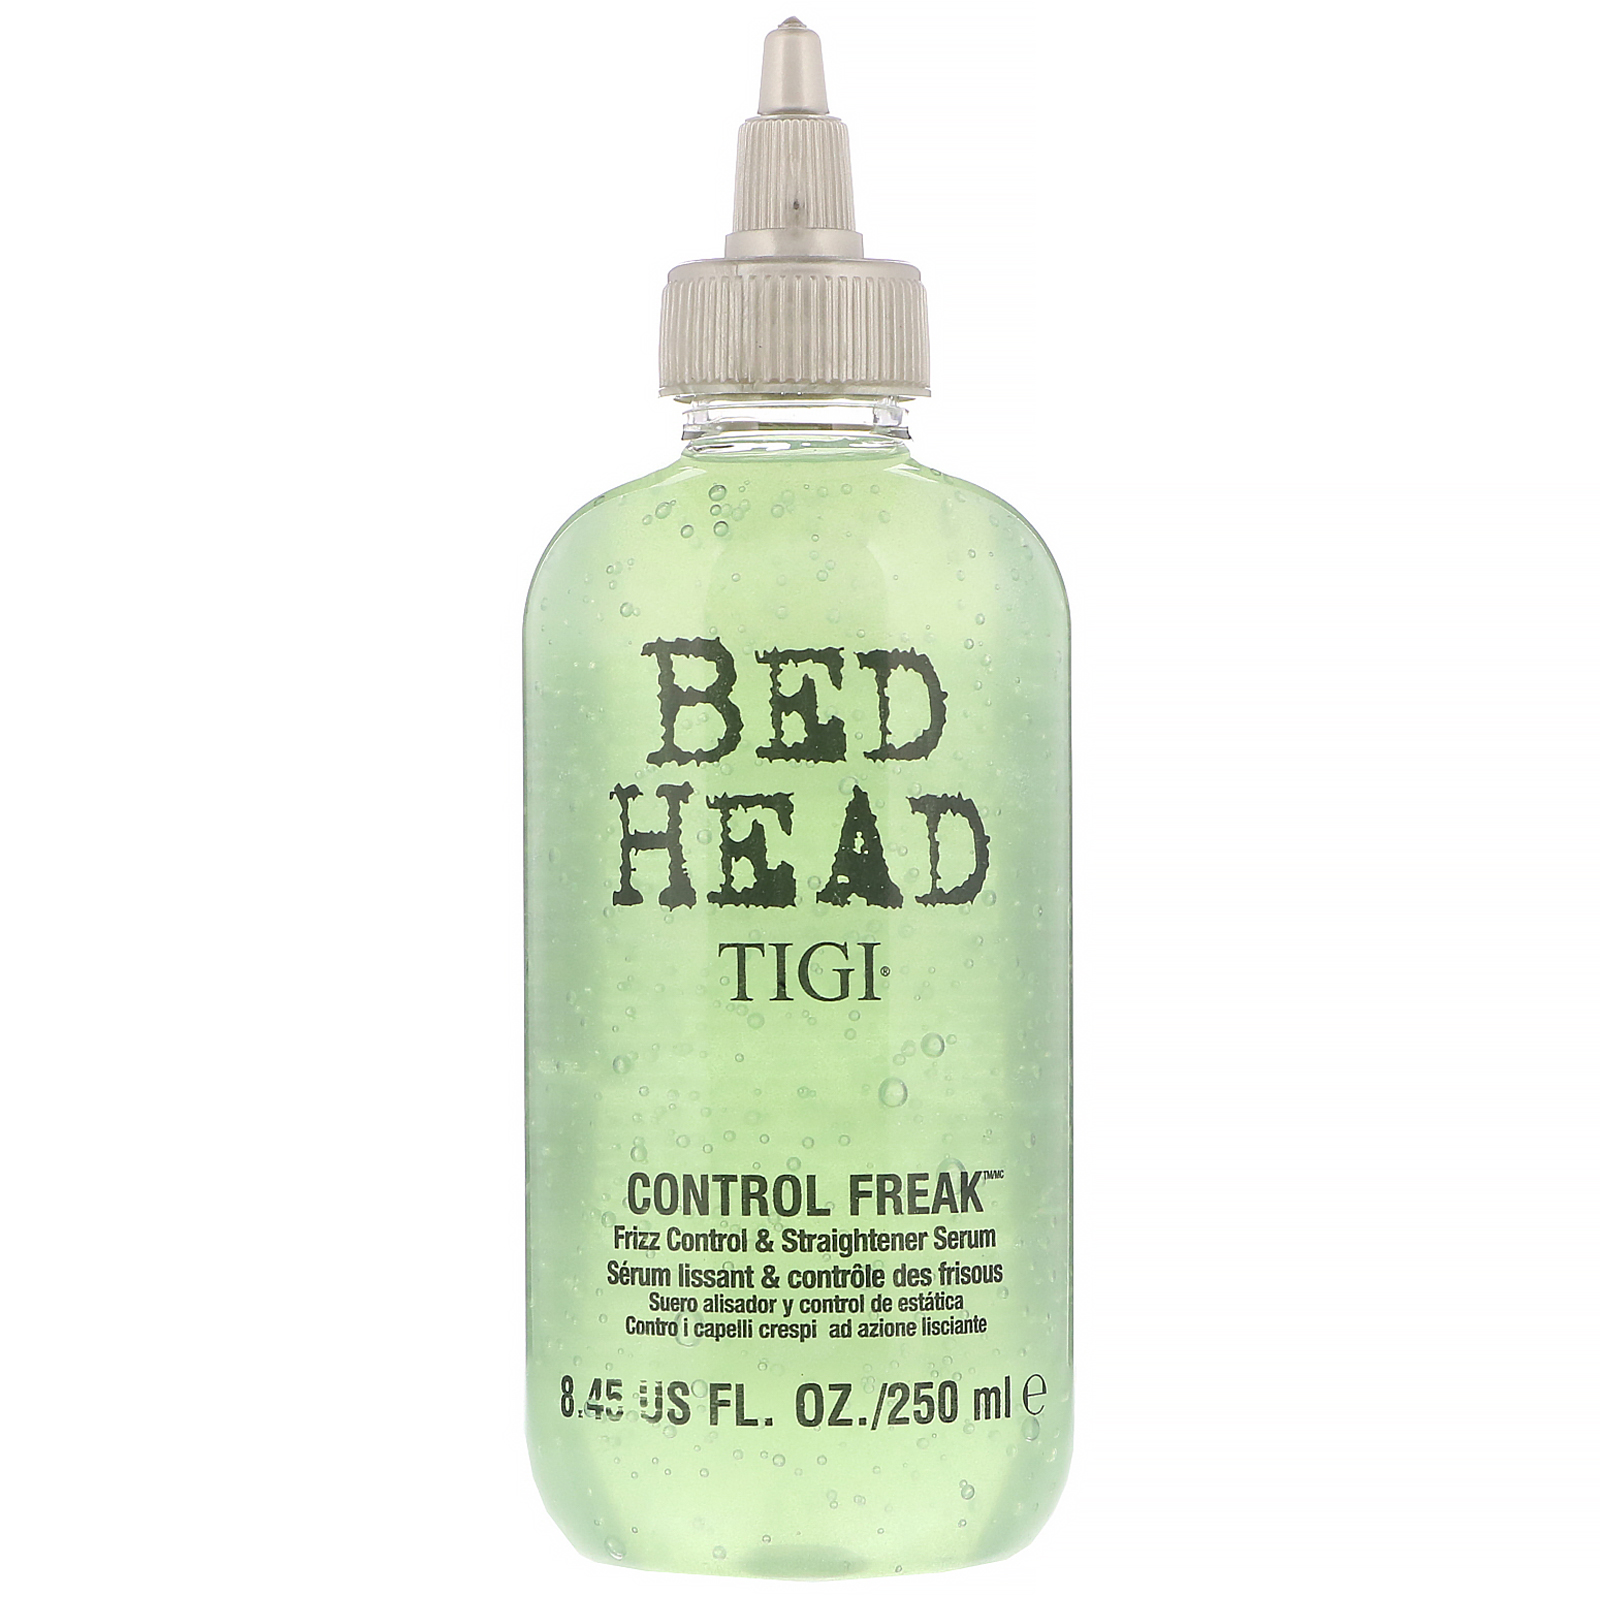 Tigi Bed Head Control Freak Iherb